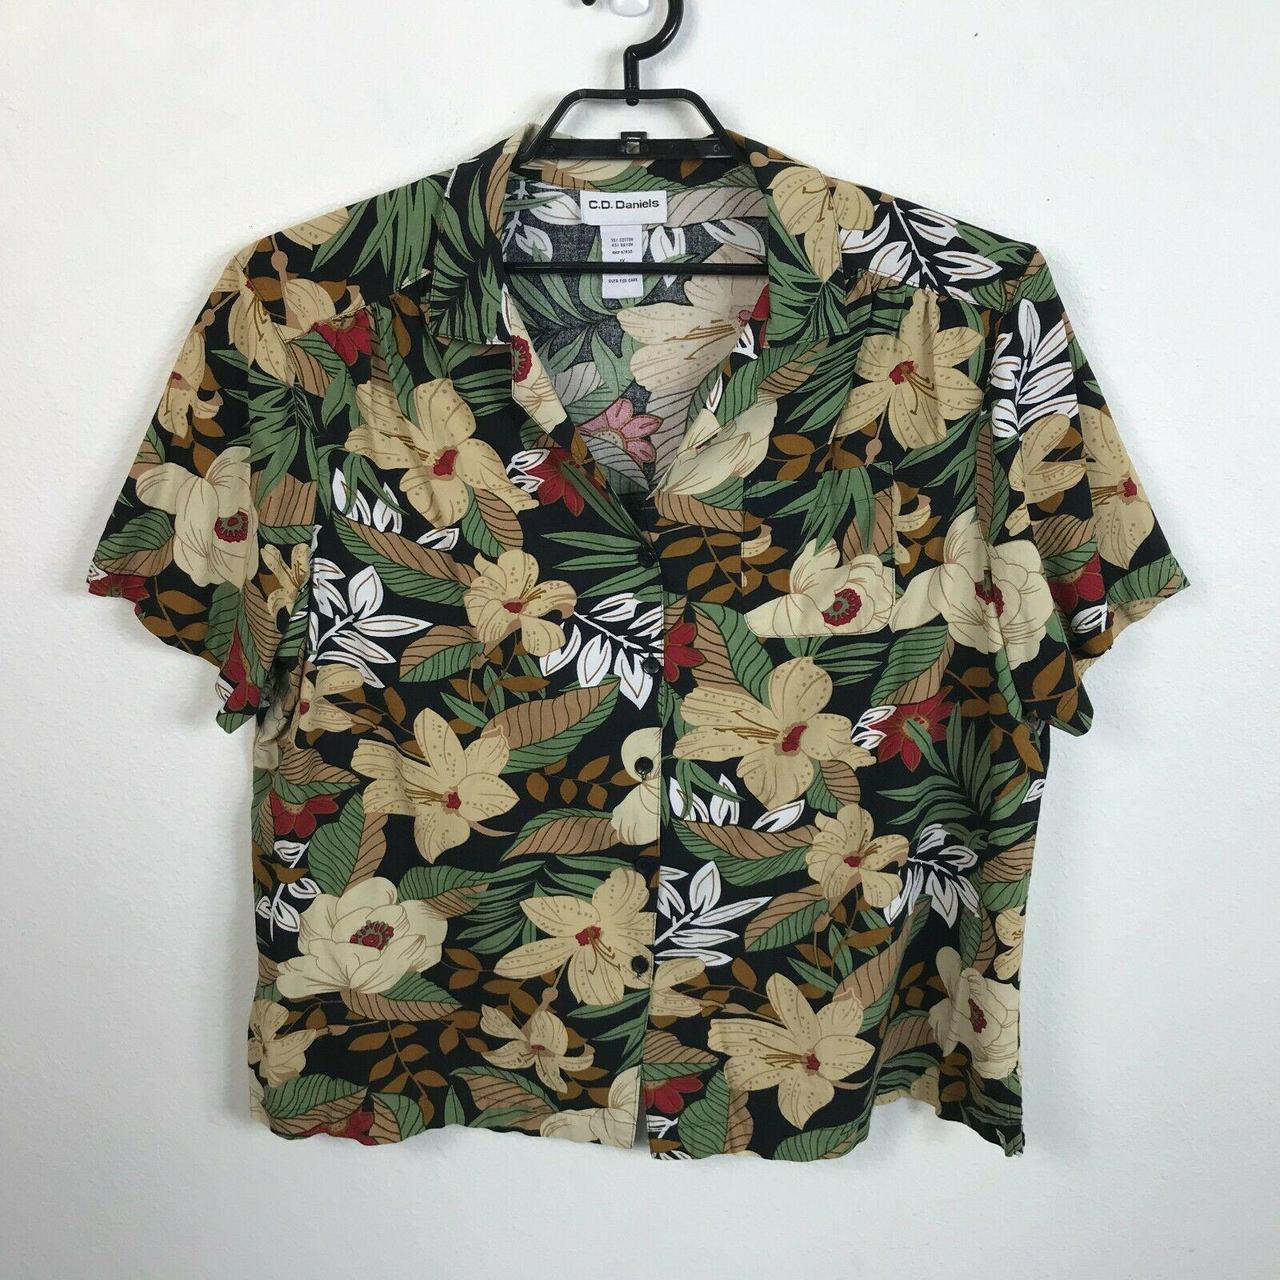 Product Image 1 - C.D. Daniels Hawaiian Shirt Blouse